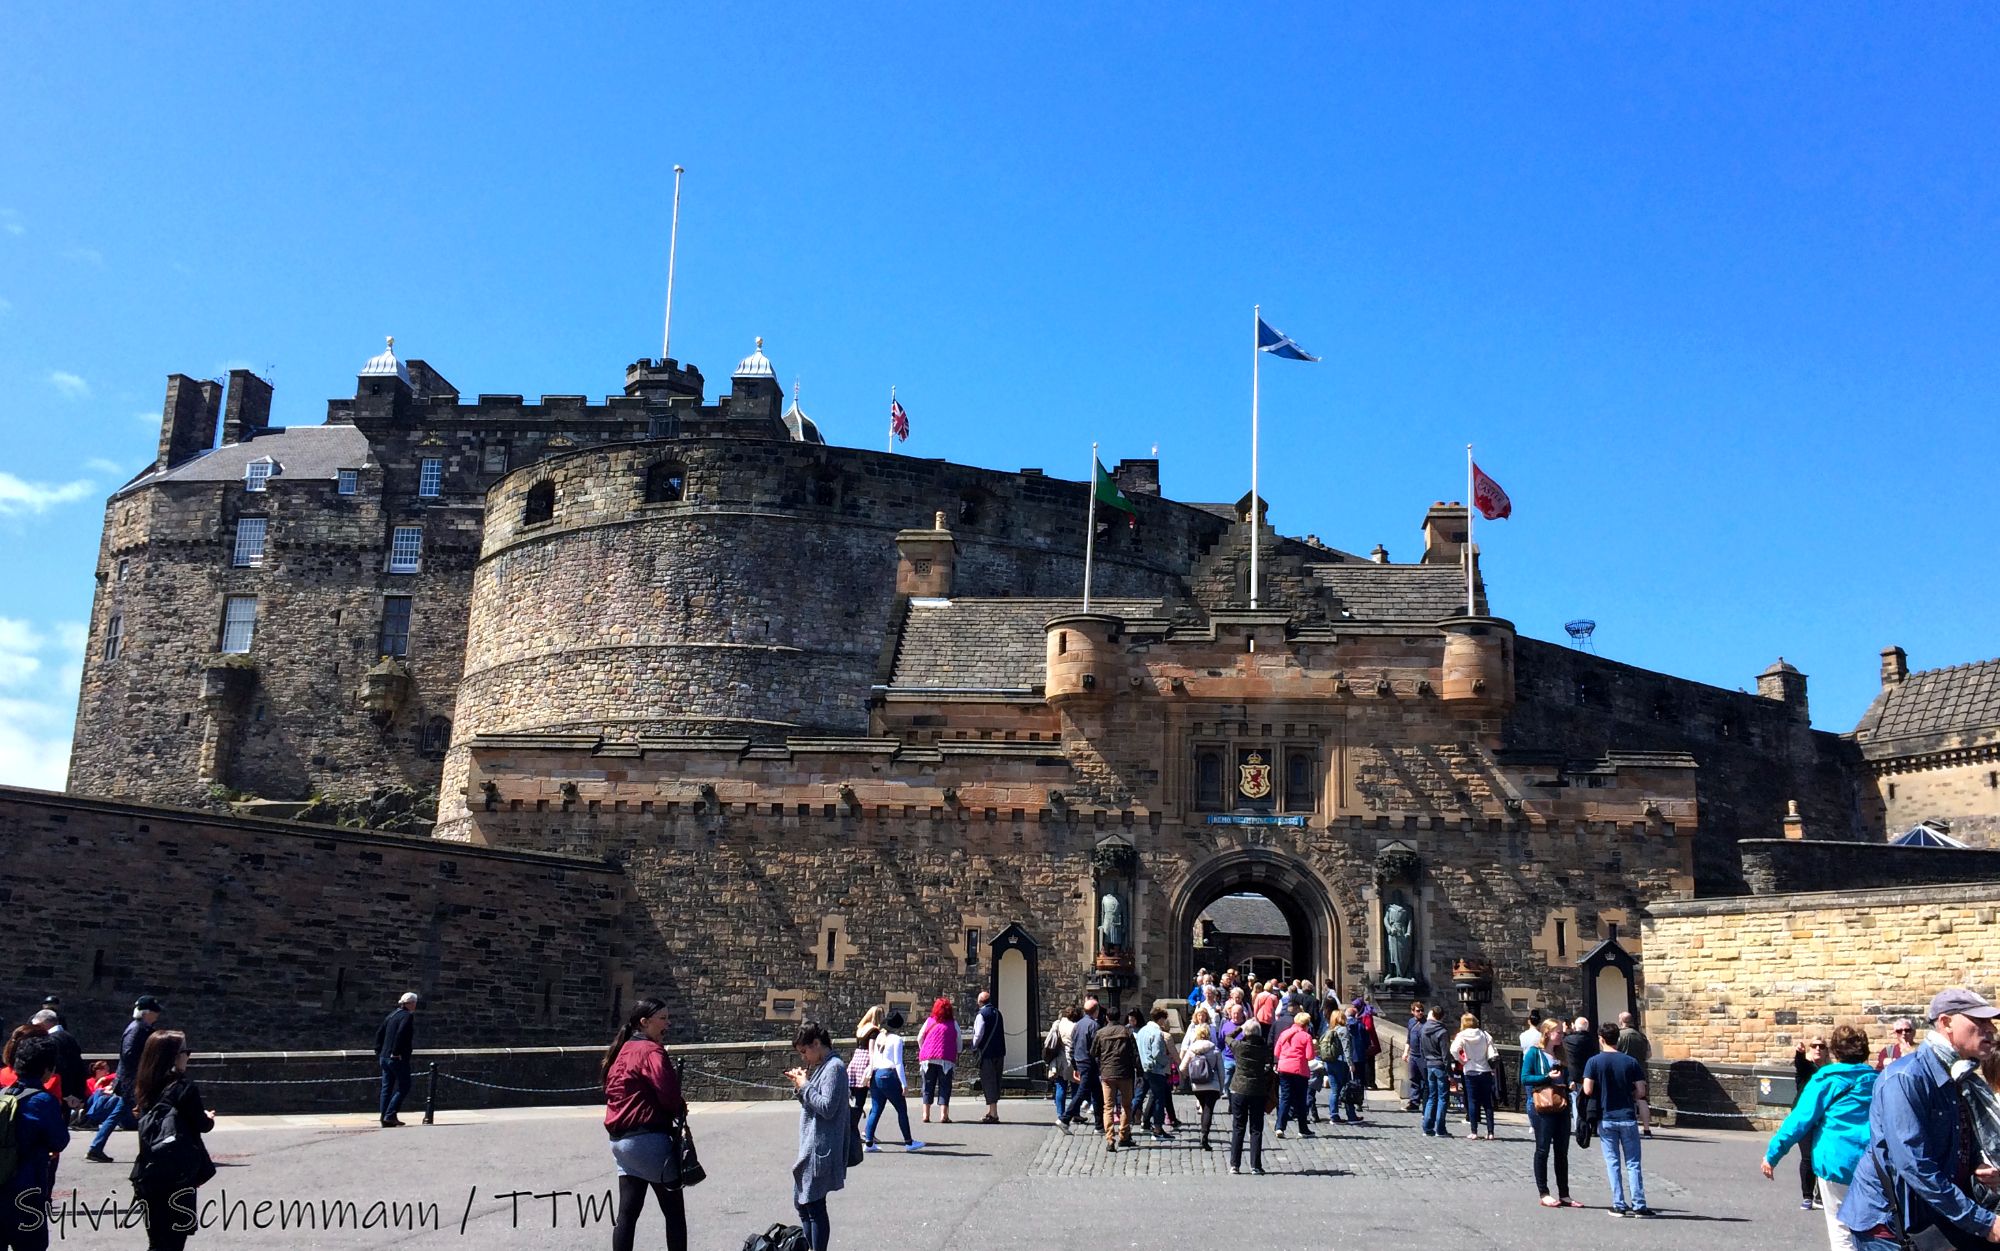 Eingang des Edinburgh Castle
Edinburgh Sehenswürdigkeiten Geschichte